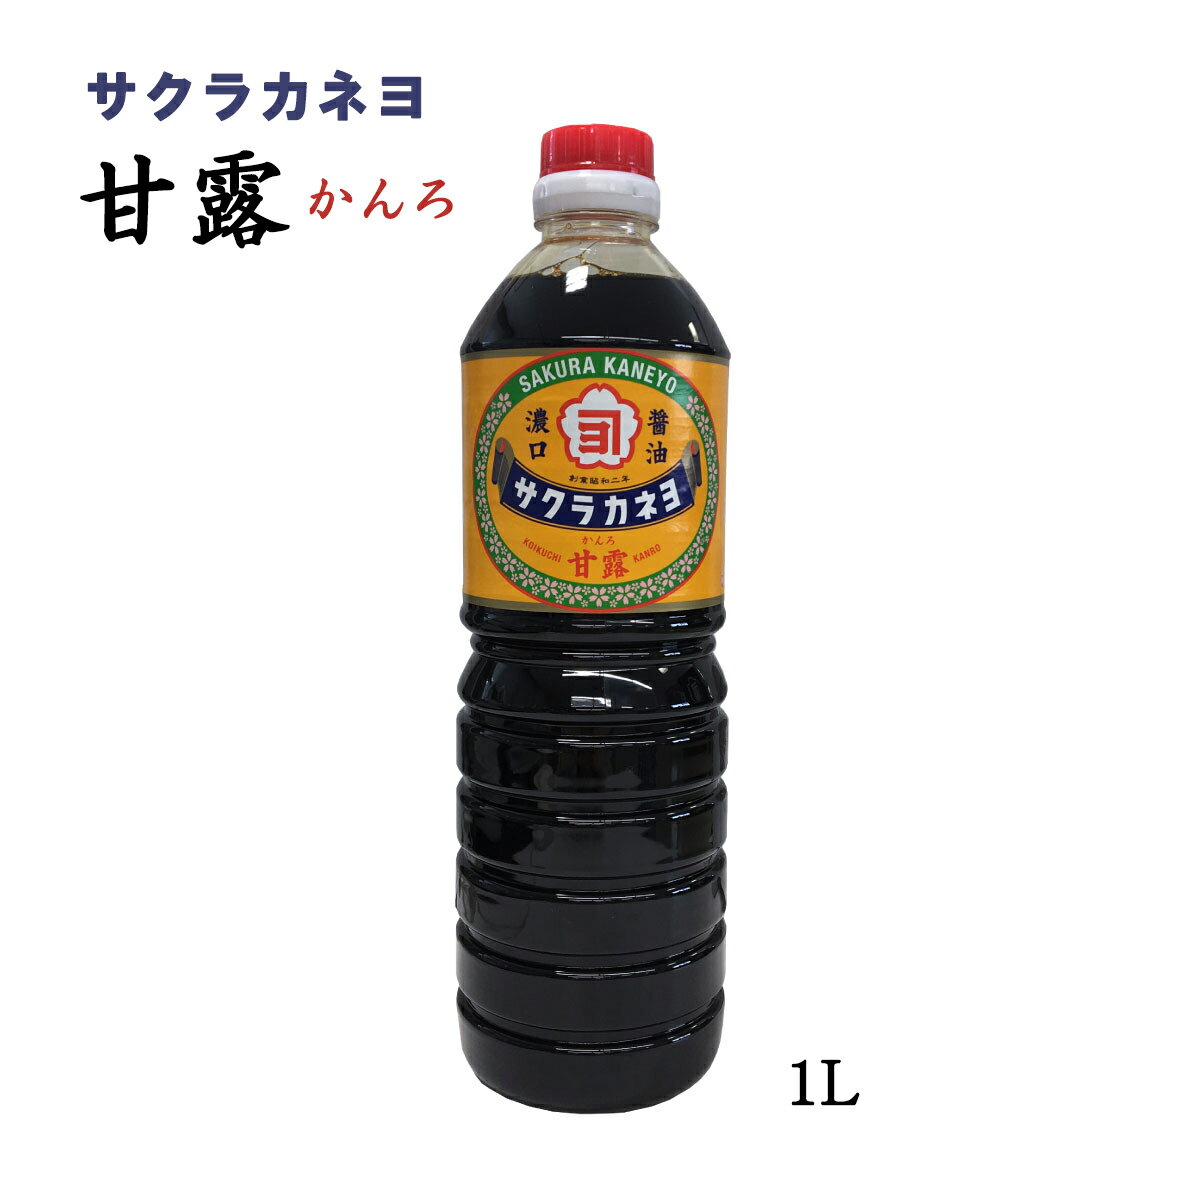 【スーパーセール価格】[吉村醸造サクラカネヨ] 甘露 1L しょうゆ 甘口醤油 九州 鹿児島